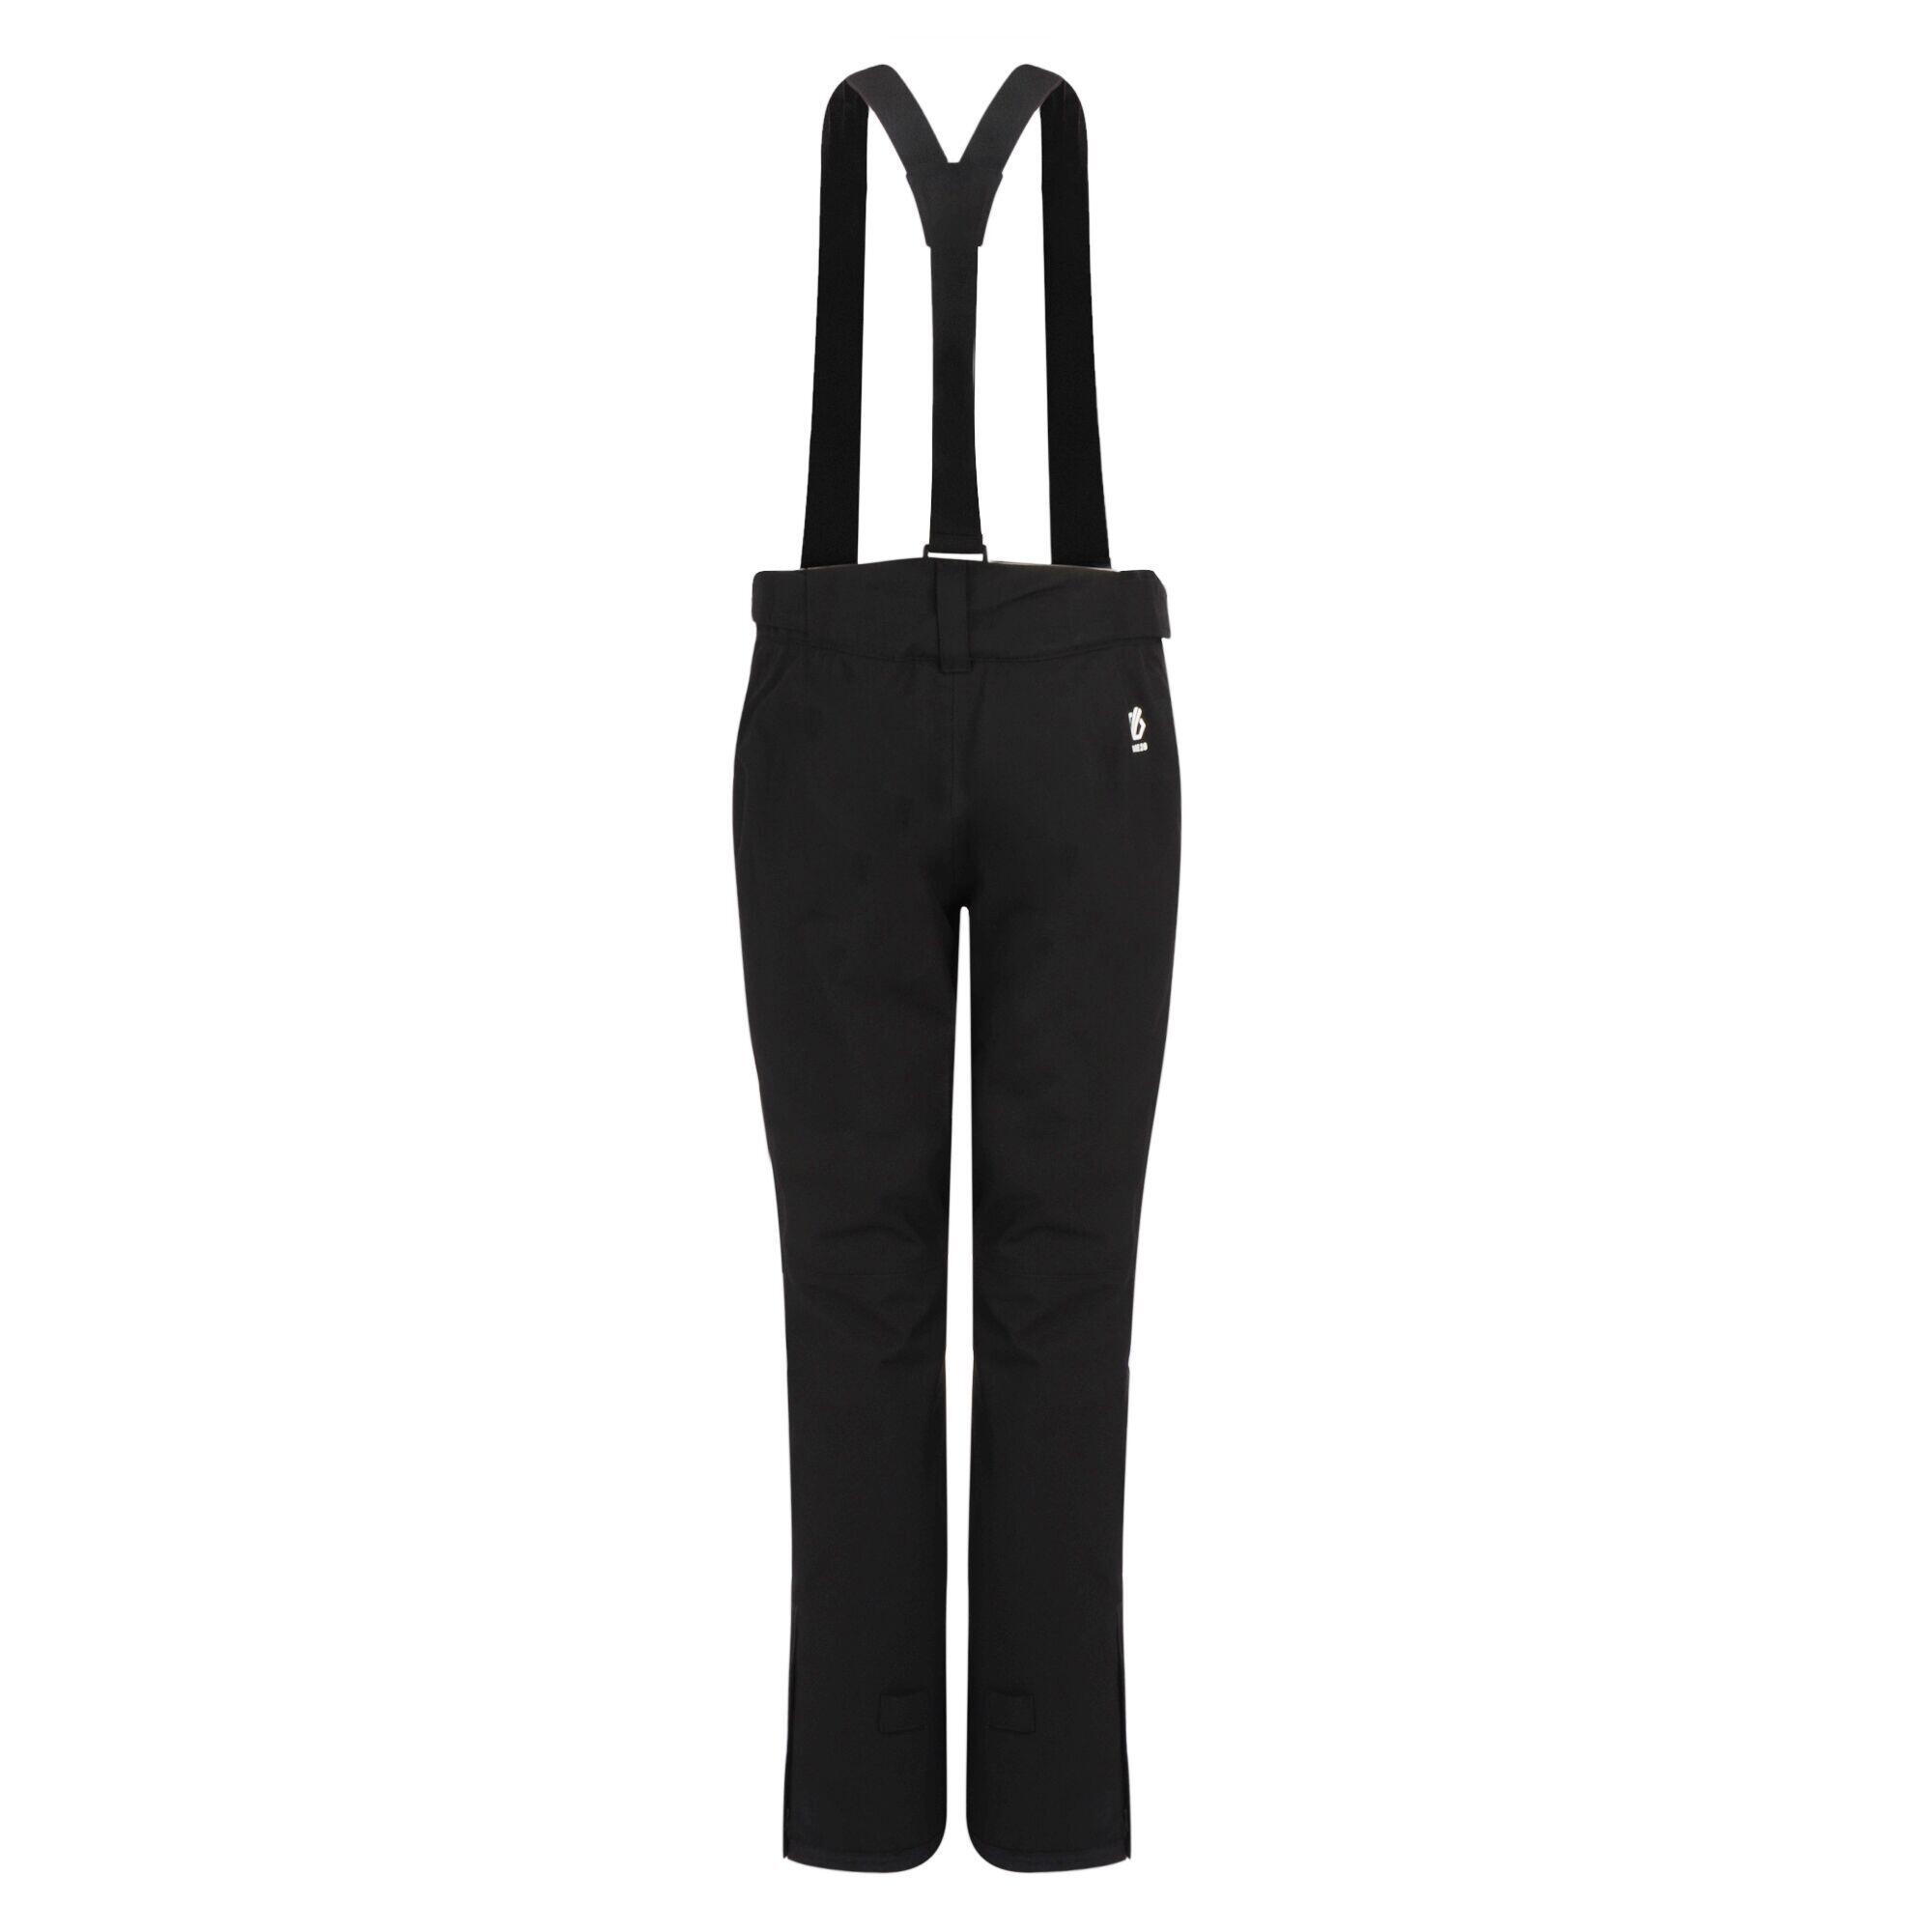 Diminish Women's Ski Pants - Black 7/7